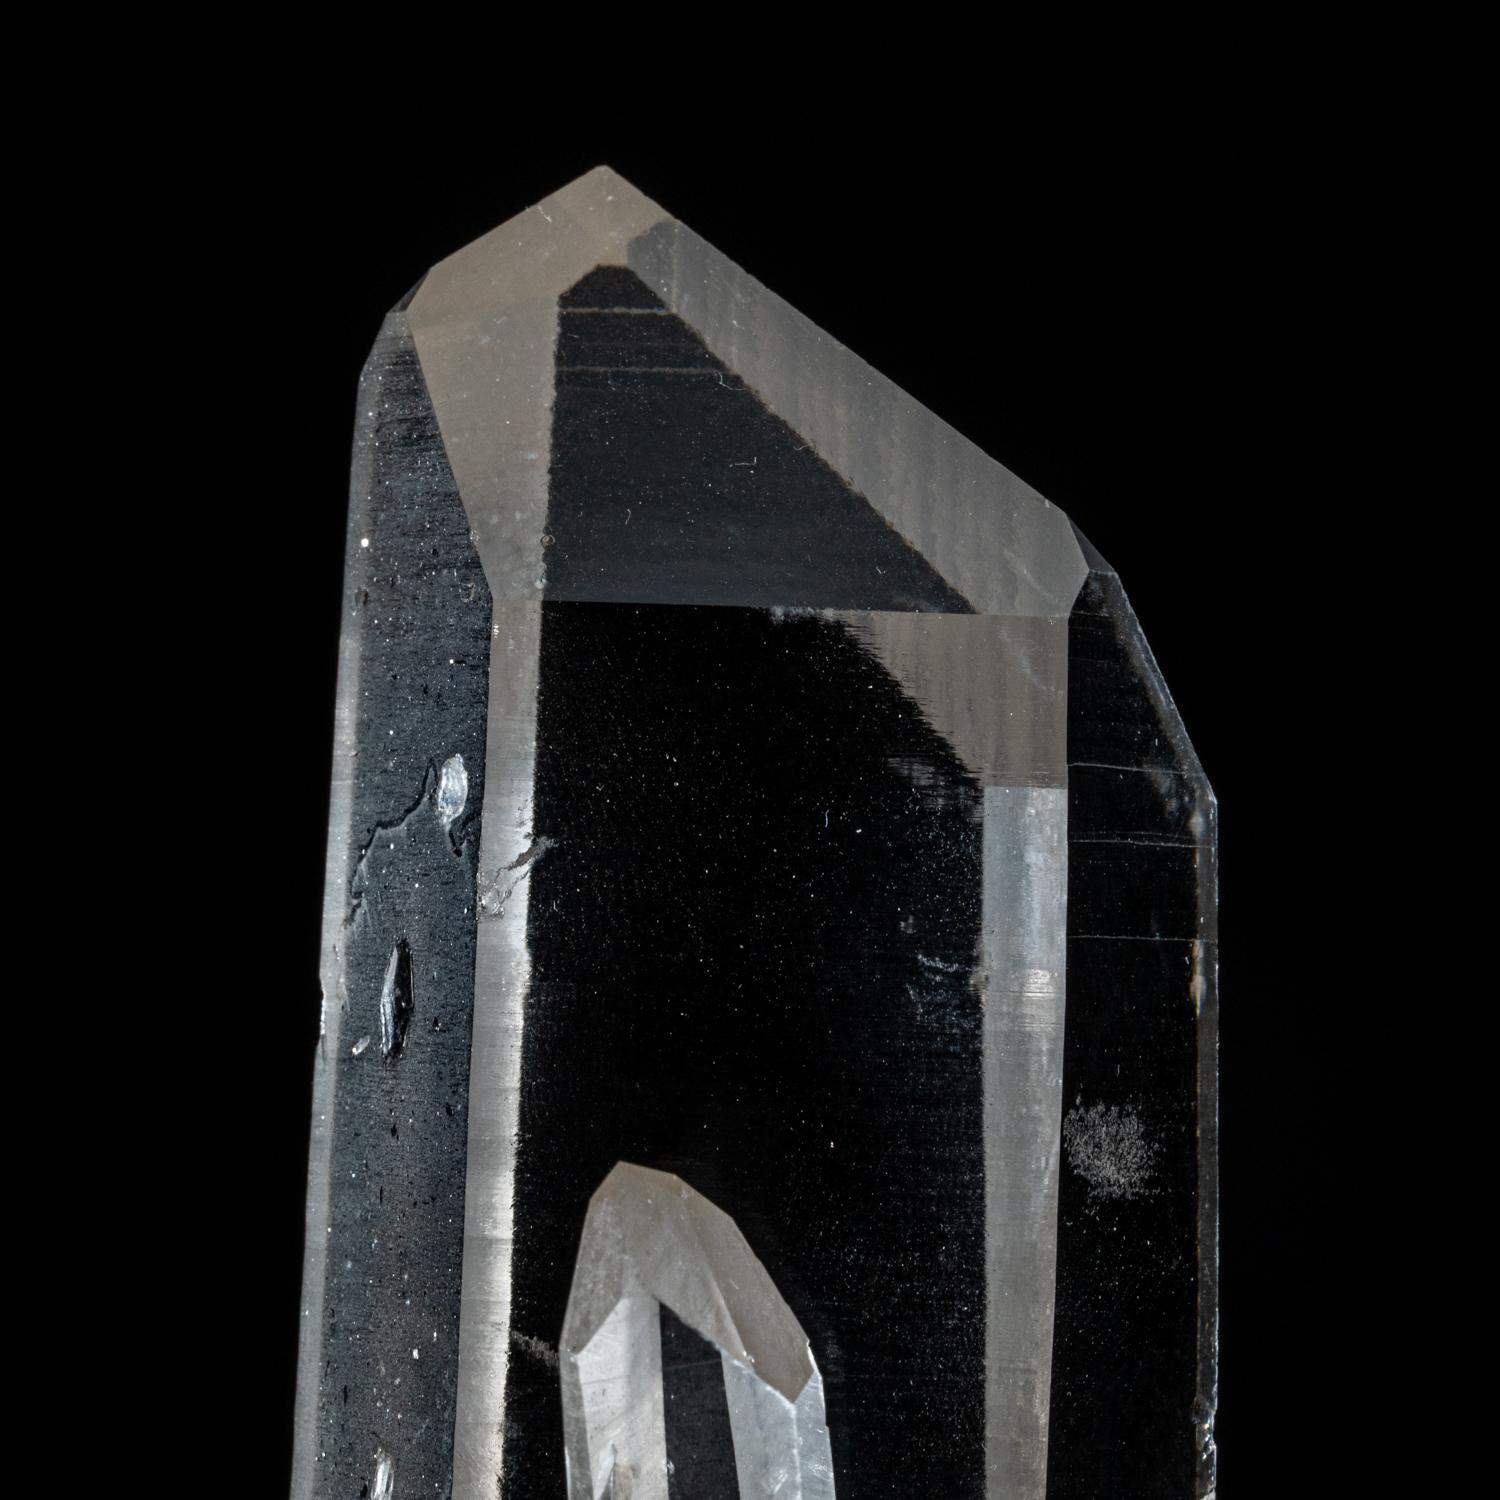 Aus Diamantina, Minas Gerais, Brasilien

Große transparente farblose Quarzkristalle mit Oberflächen, die aus vielen kleineren parallelen Kristallflächen bestehen. Im Inneren ist der Quarz hochtransparent mit vereinzelten Fehlstellen.

 Sie erhalten